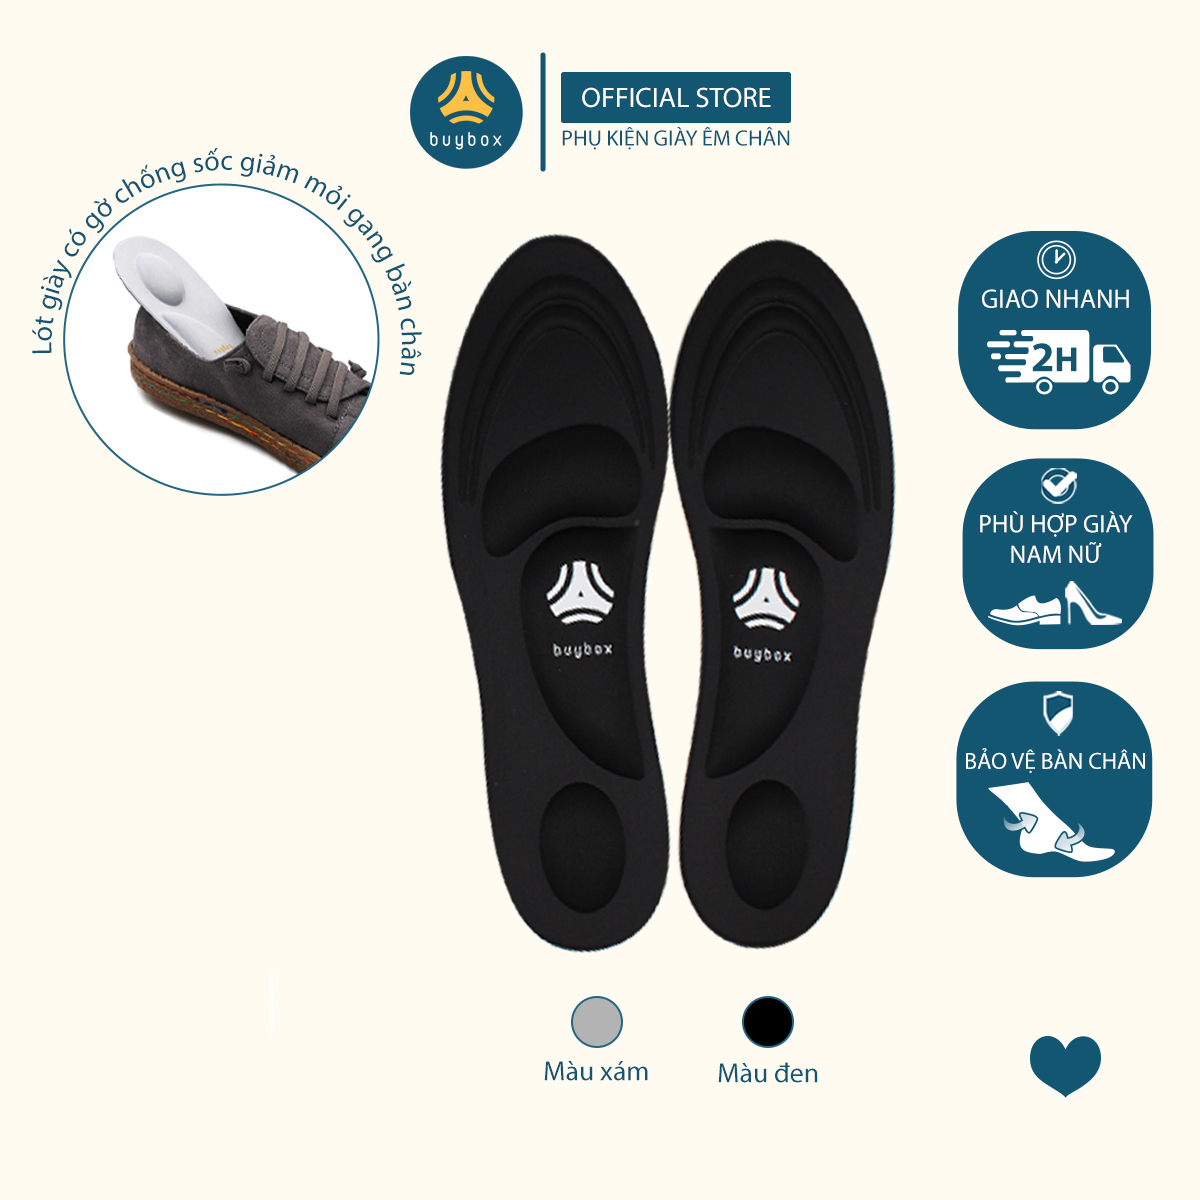 Lót giày thể thao 4D thiết kế vòm giảm áp lực bàn chân giúp đi bộ lâu hơn thumbnail